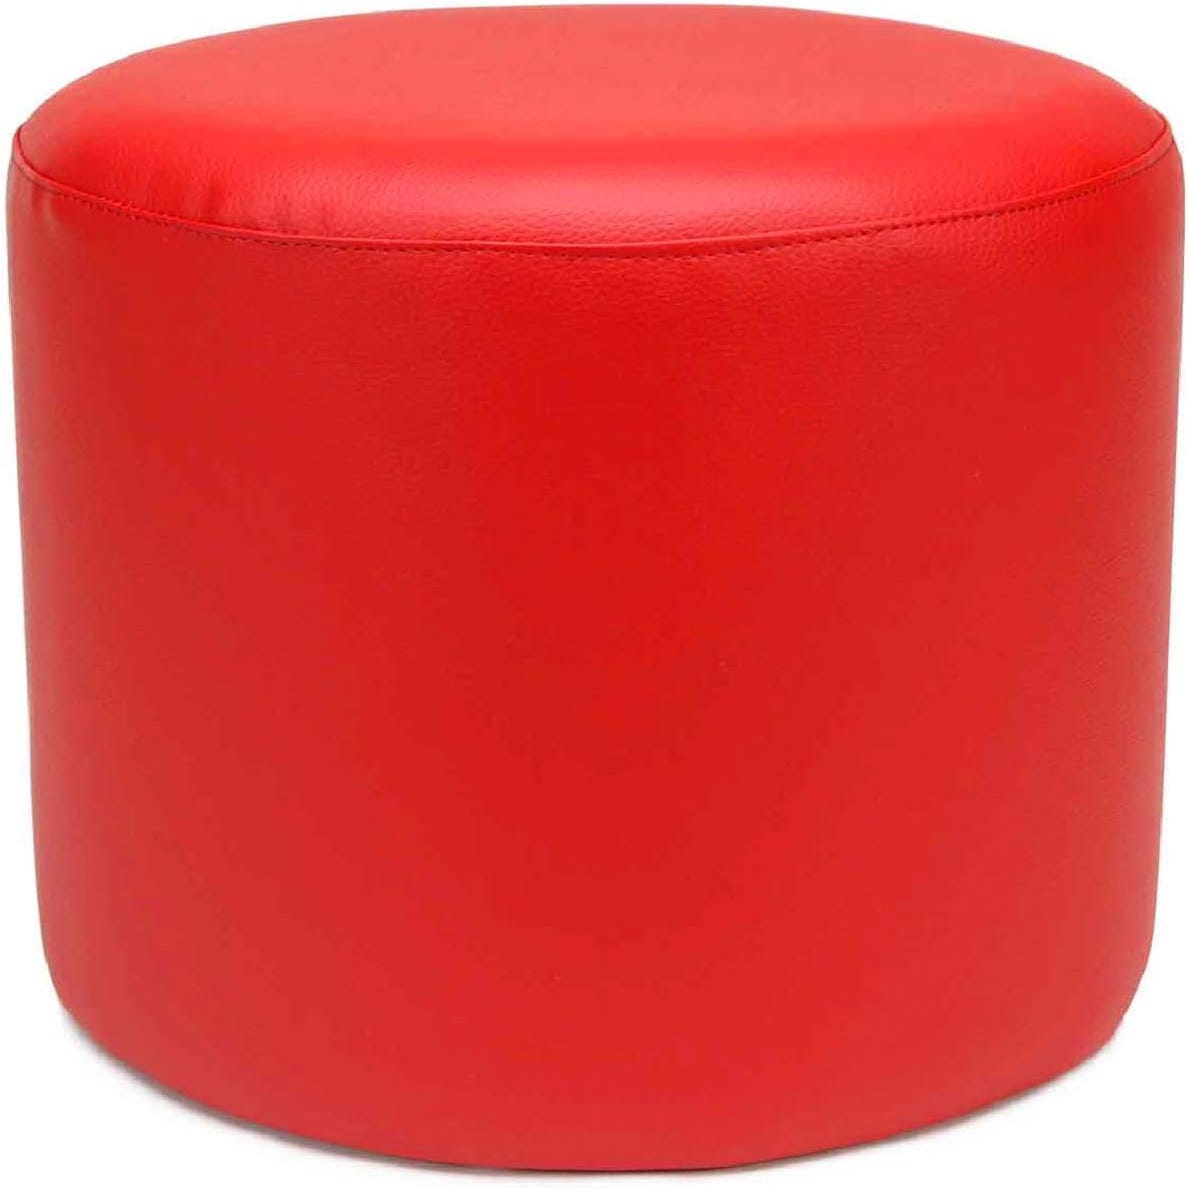 THE SECRET HOME - Puff Rojo con Relleno Incluido - Asiento Forma Pera  Tamaño L Polipiel - Sillón Cómodo Moldeable para Salón, Terraza o  Habitación